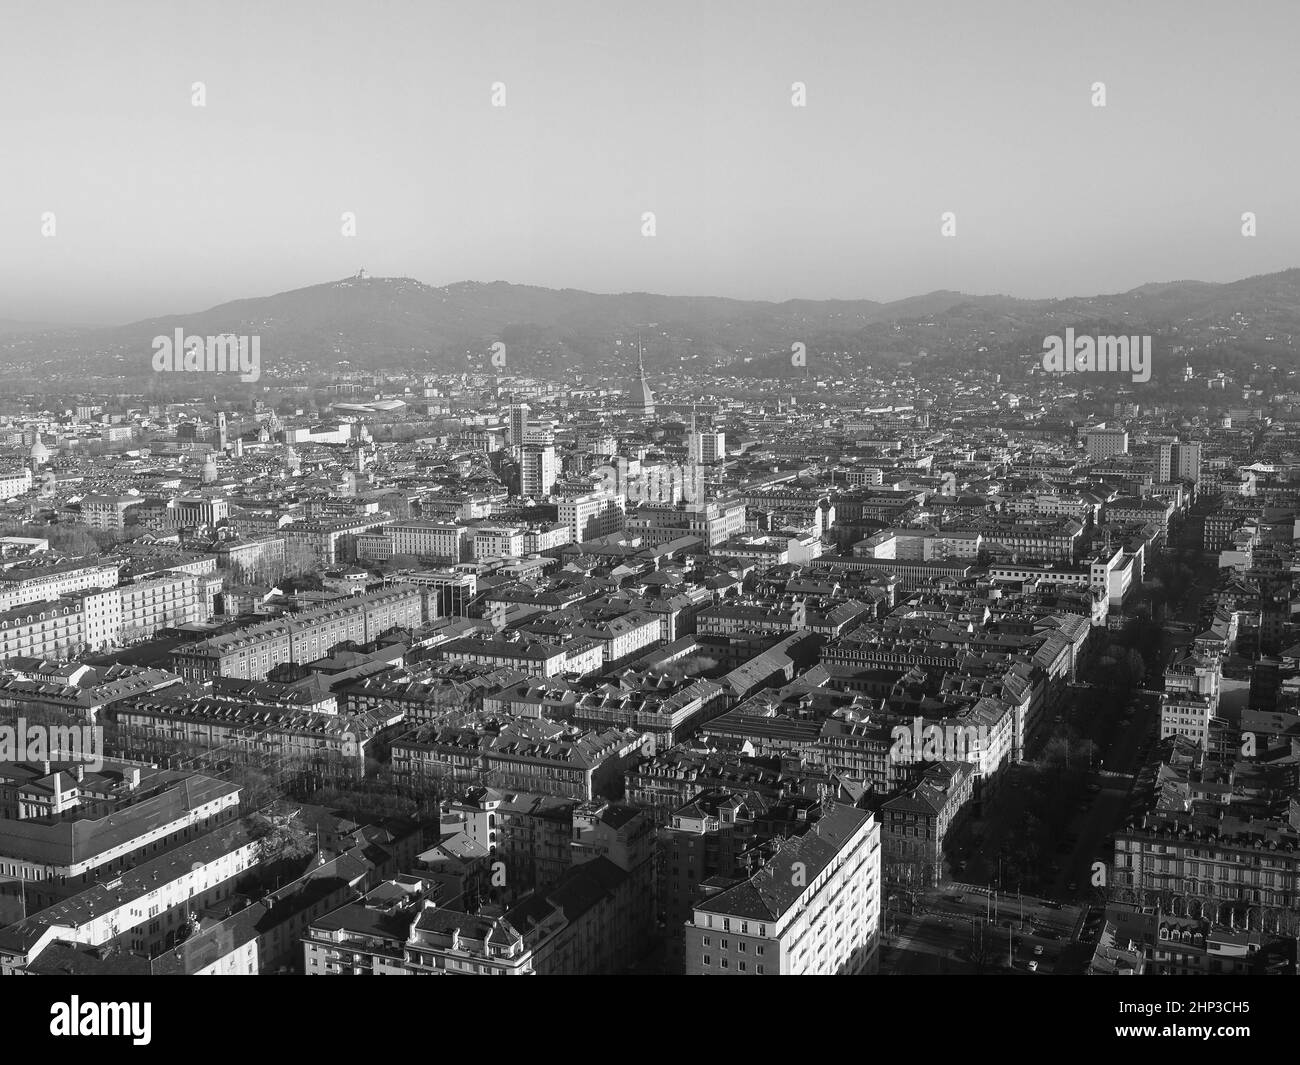 Vista aérea de la ciudad de Turín, Italia, con la plaza Piazza Castello en blanco y negro Foto de stock